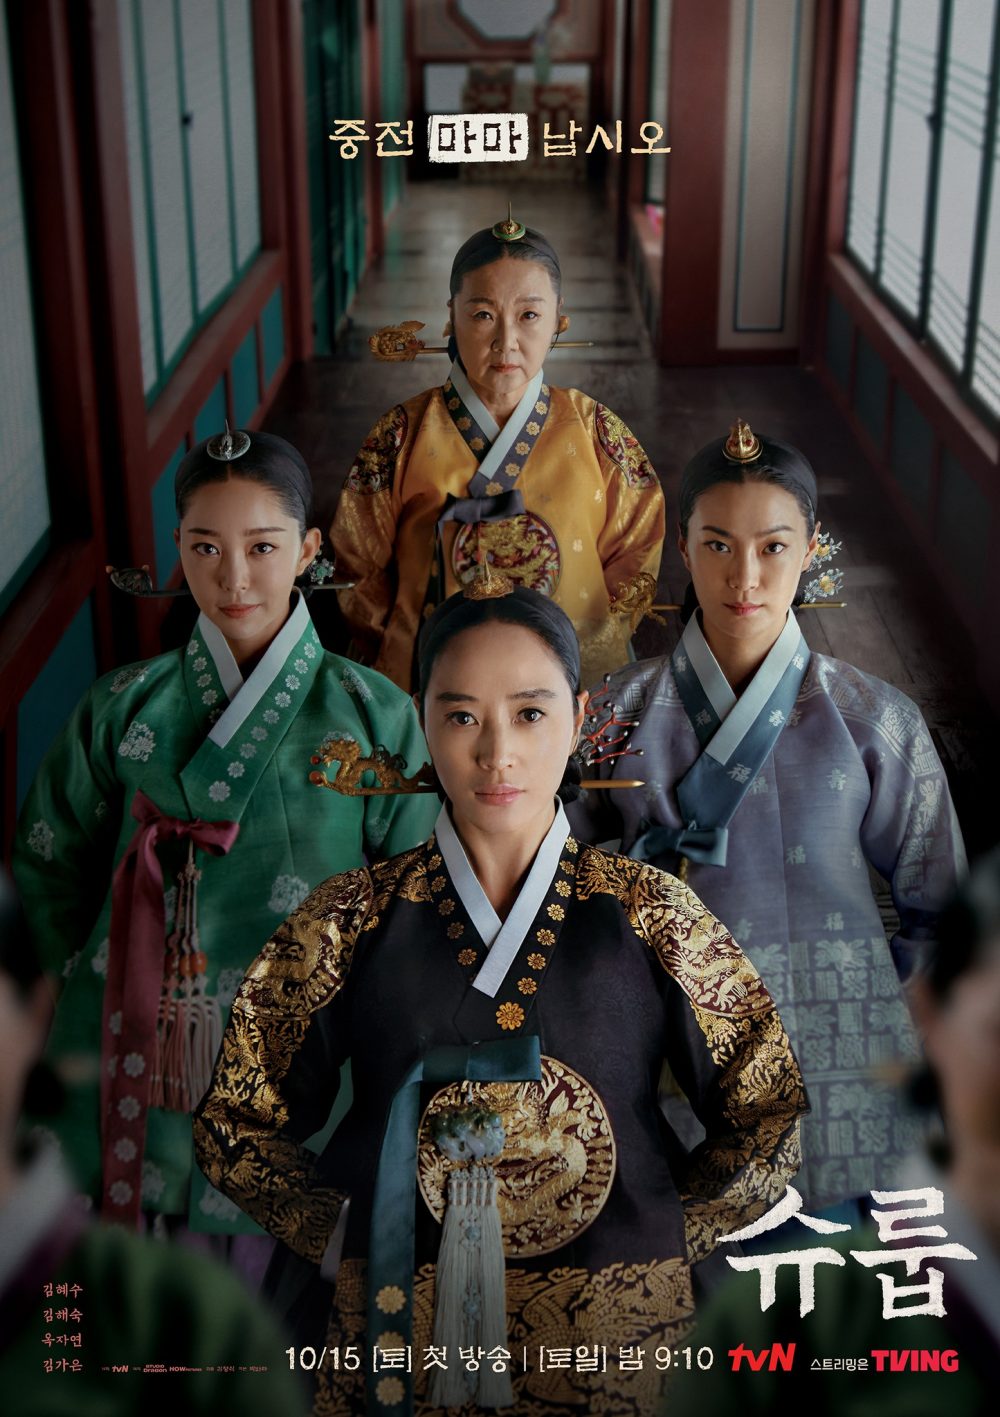 harper bazaar review phim duoi bong trung dien under the queens umbrella 9 e1666098990541 - Dưới bóng trung điện và màn lột xác của “chị đại” Kim Hye Soo